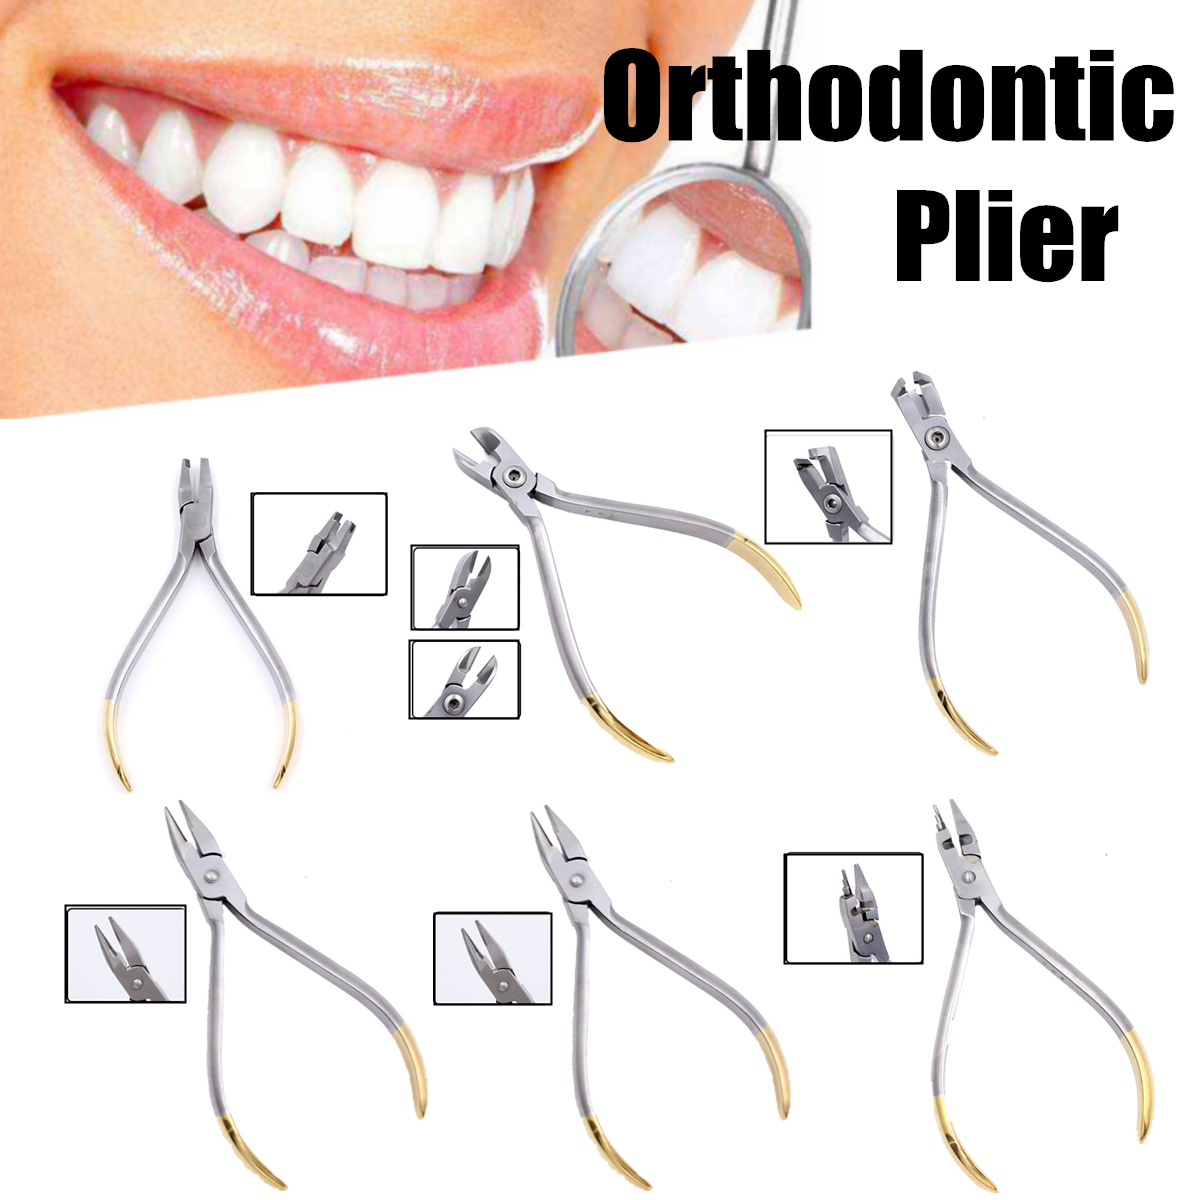 Dental-Orthodontic-Forceps-Pliers-Tool-Cutter-End-Distal-Wires-Bending-Plier-KIM-Teeth-1439156-1